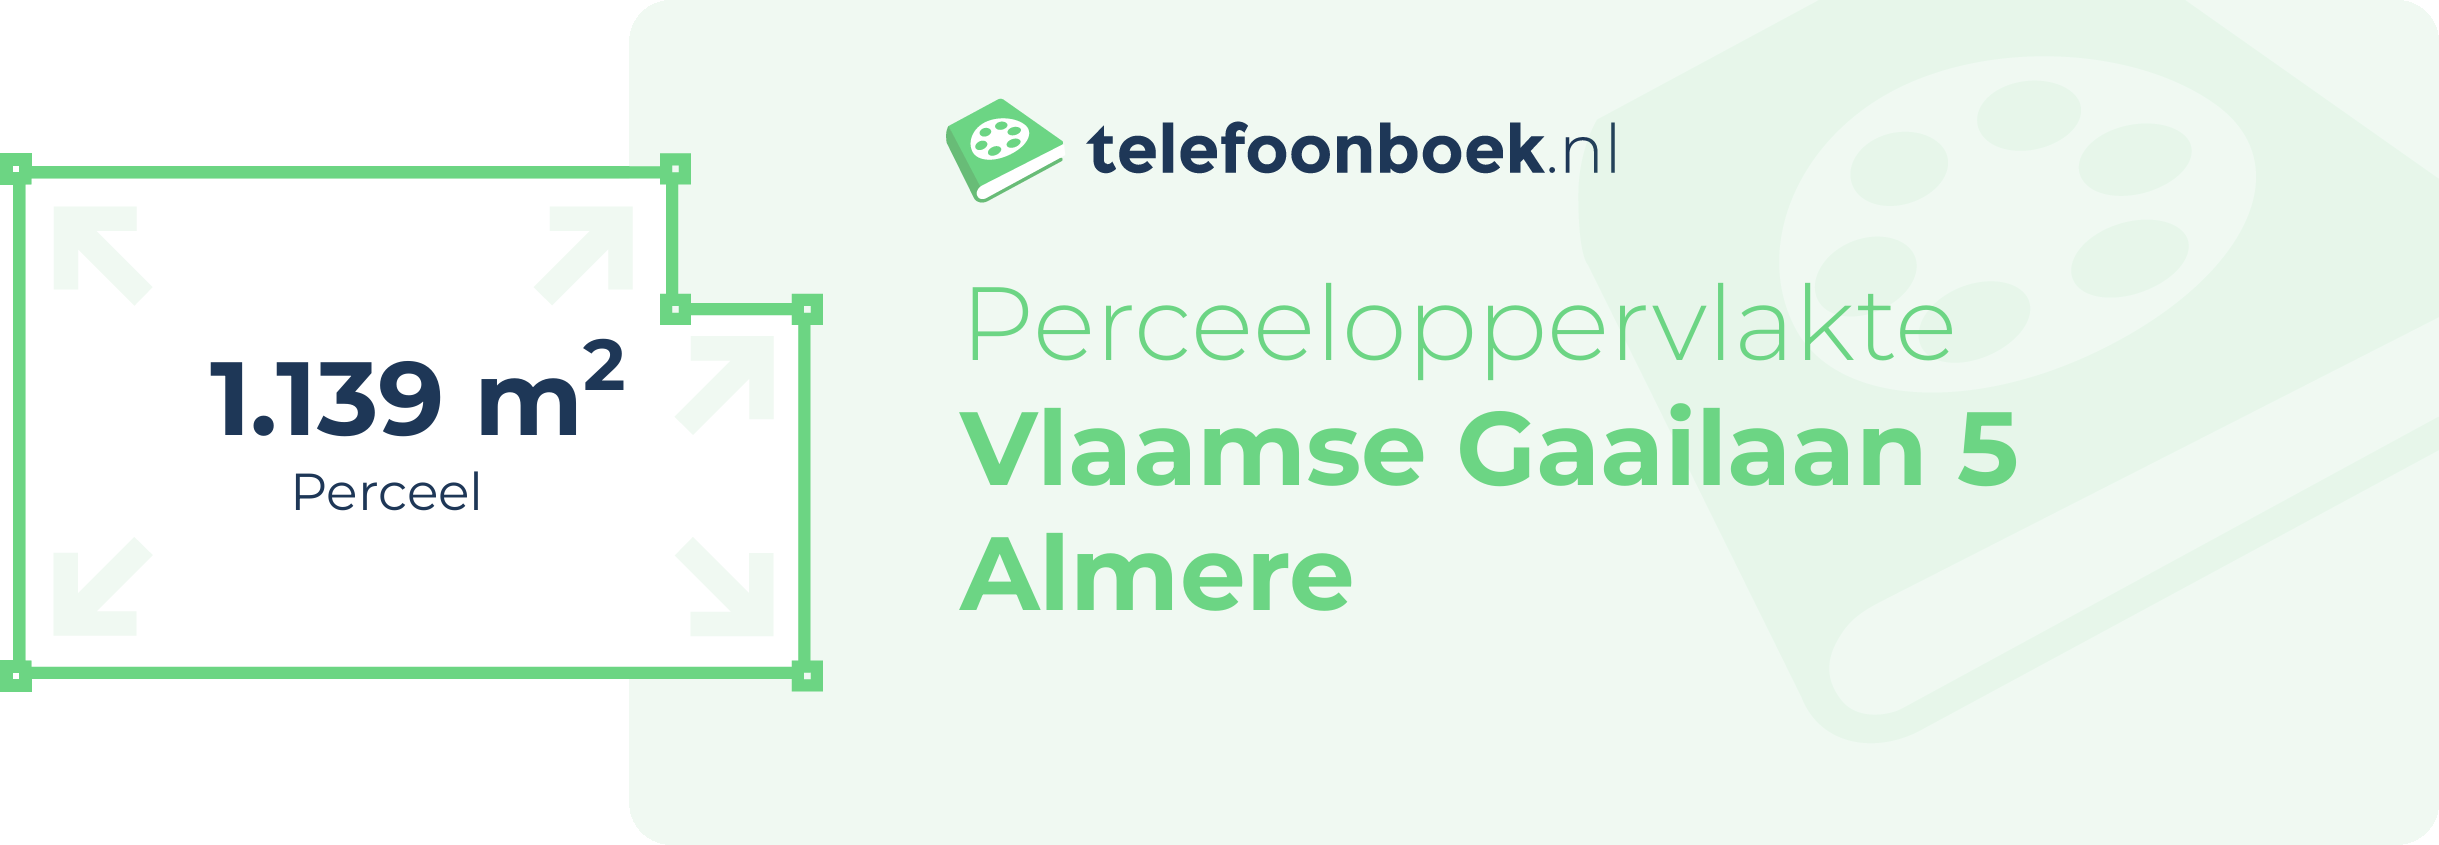 Perceeloppervlakte Vlaamse Gaailaan 5 Almere